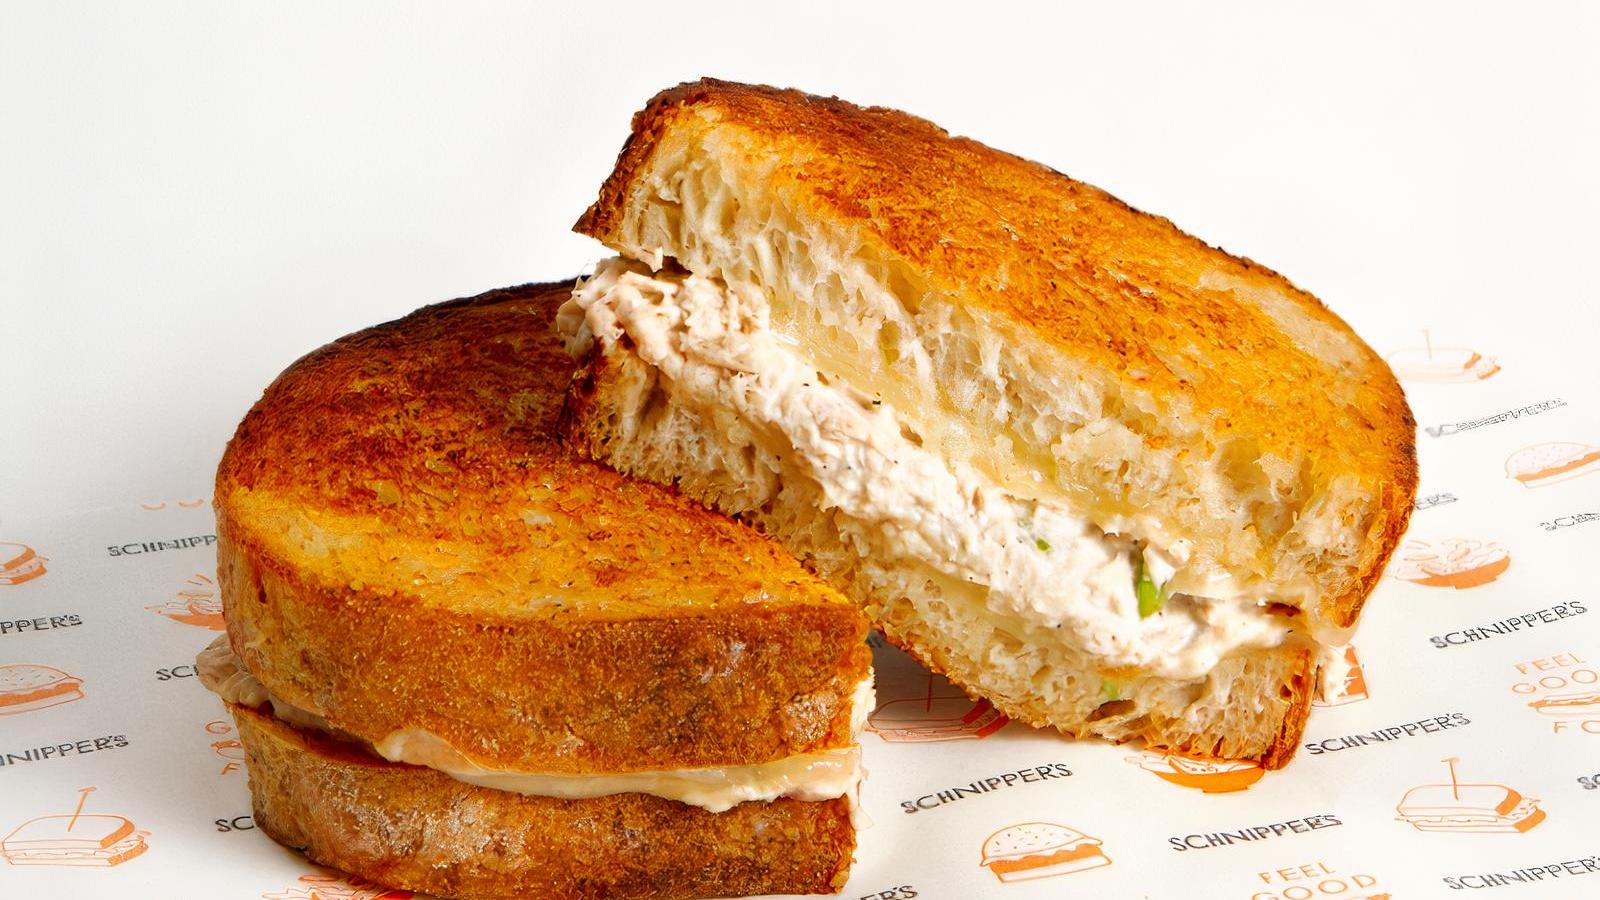 Find Sandwich Near Me - Order Sandwich - DoorDash